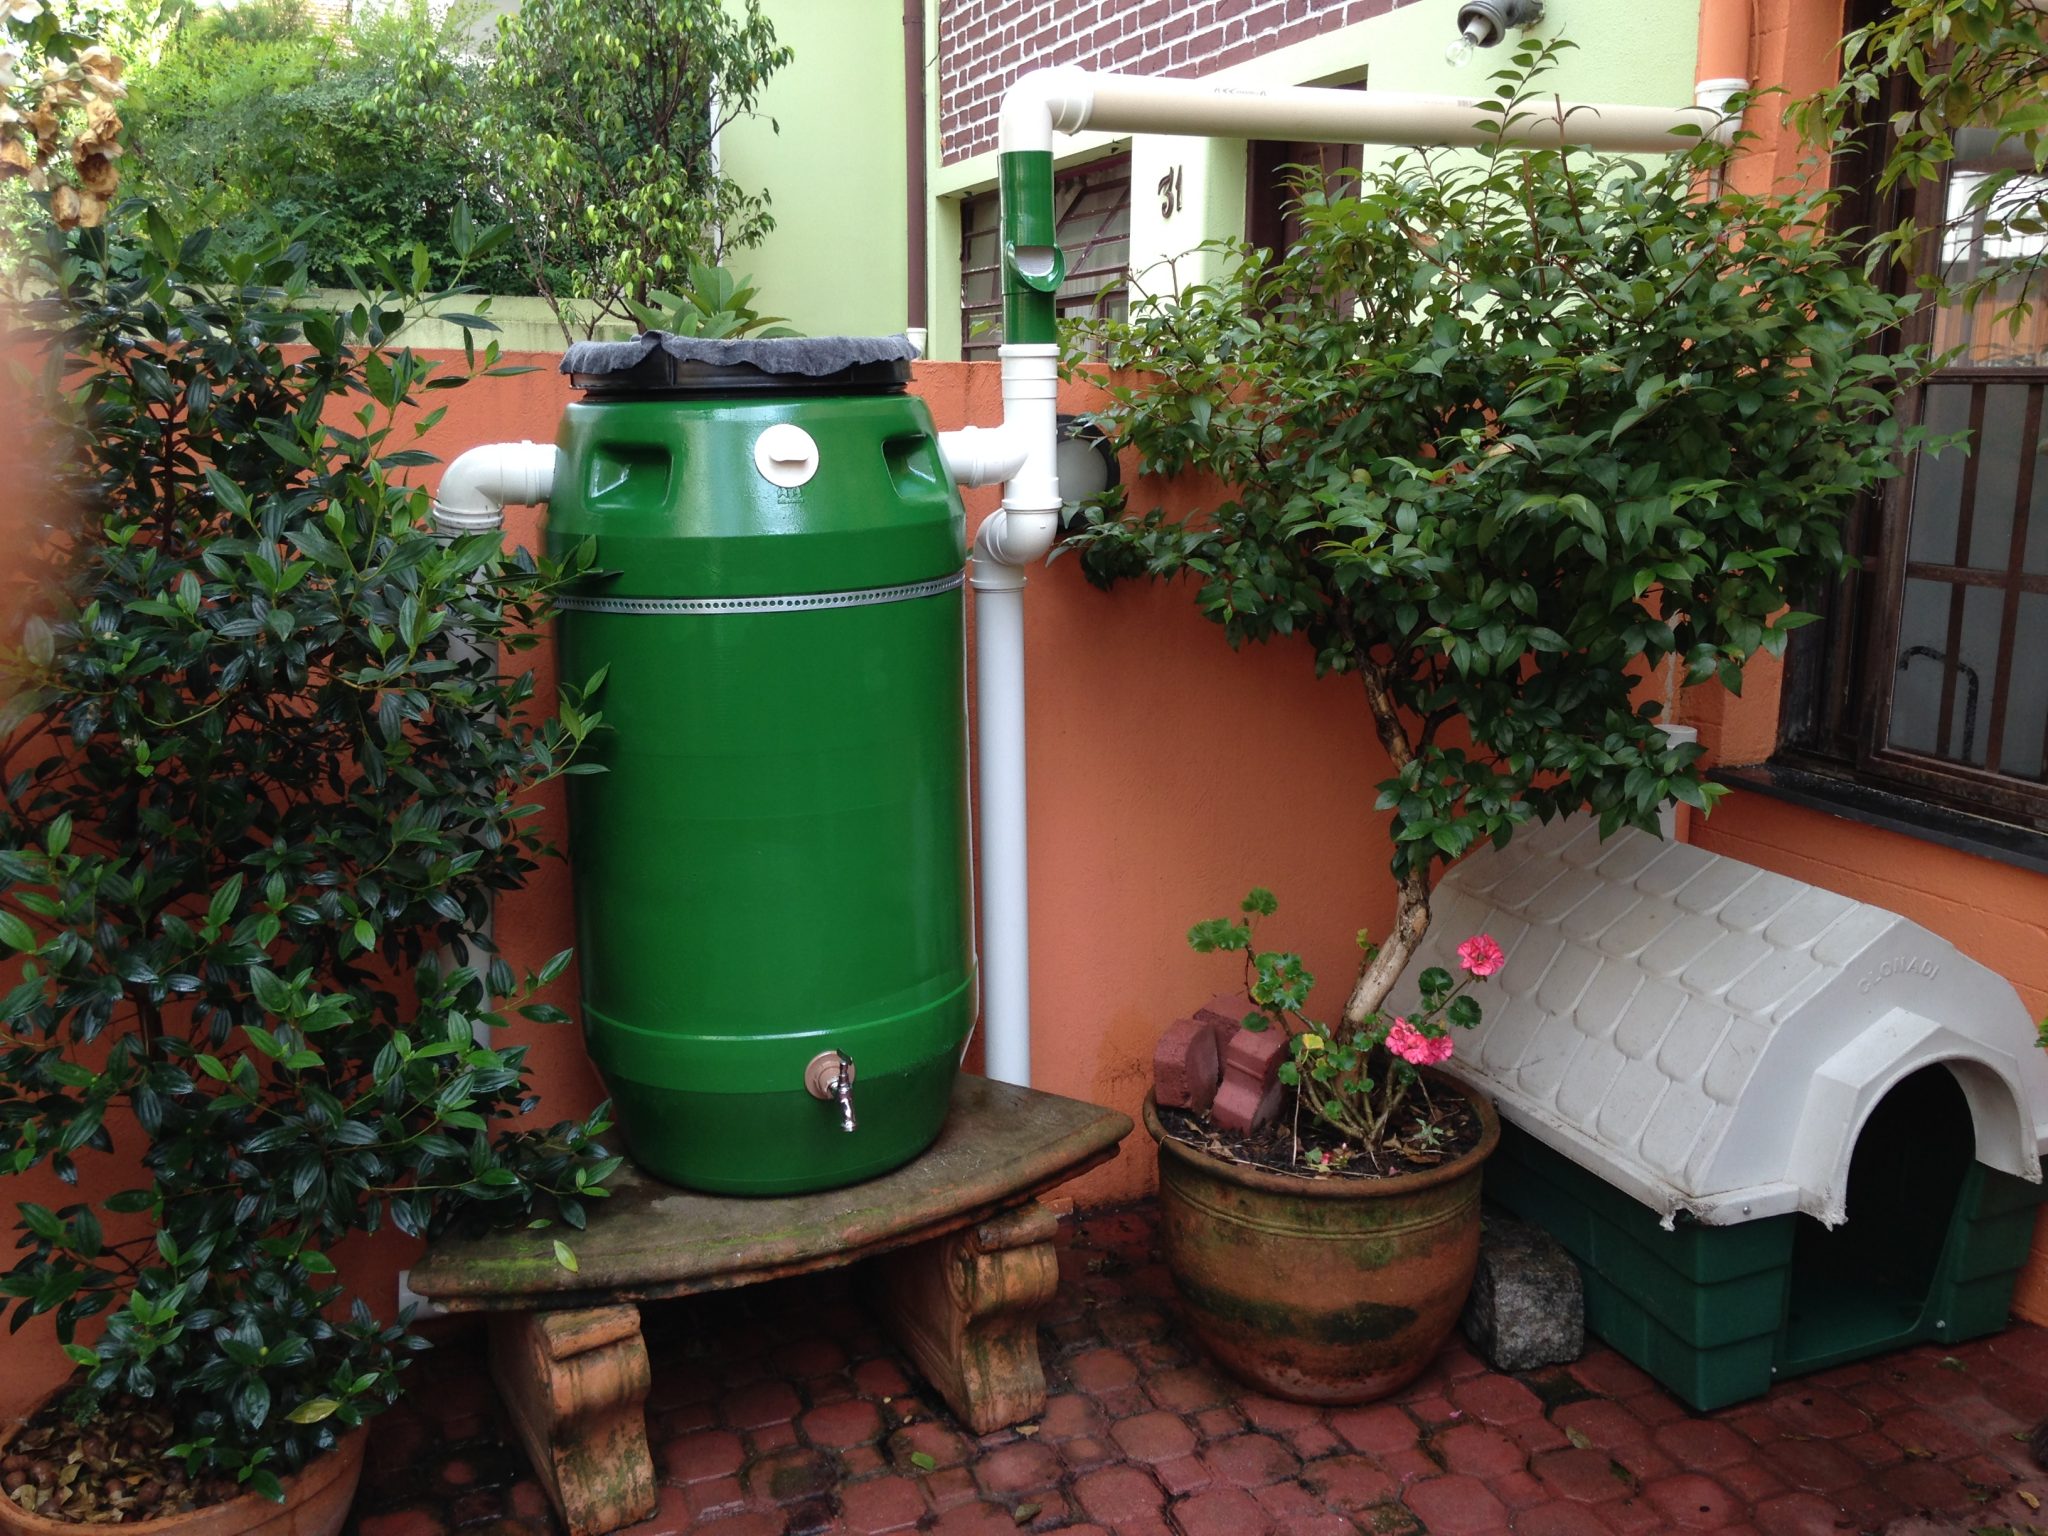 Cisterna coletora: economize água com ajuda da chuva